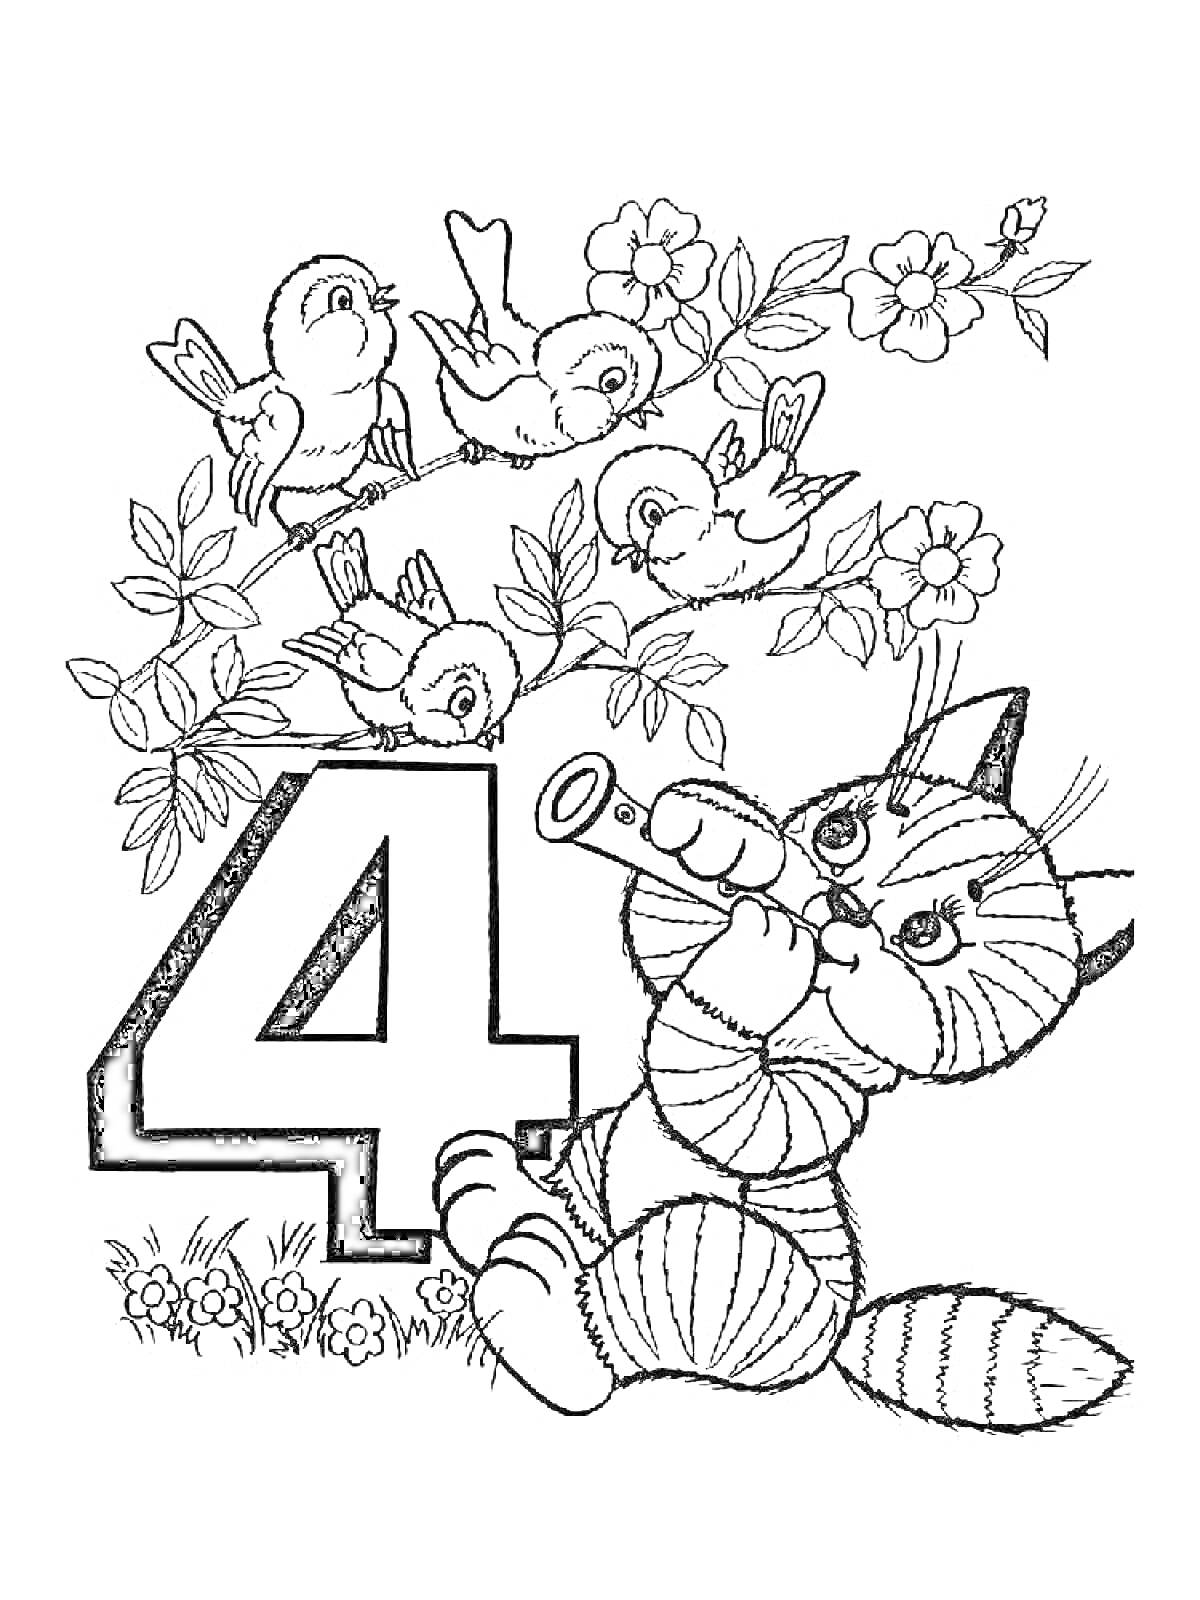 Четыре, цветущий куст с птицами и котенок с подзорной трубой.